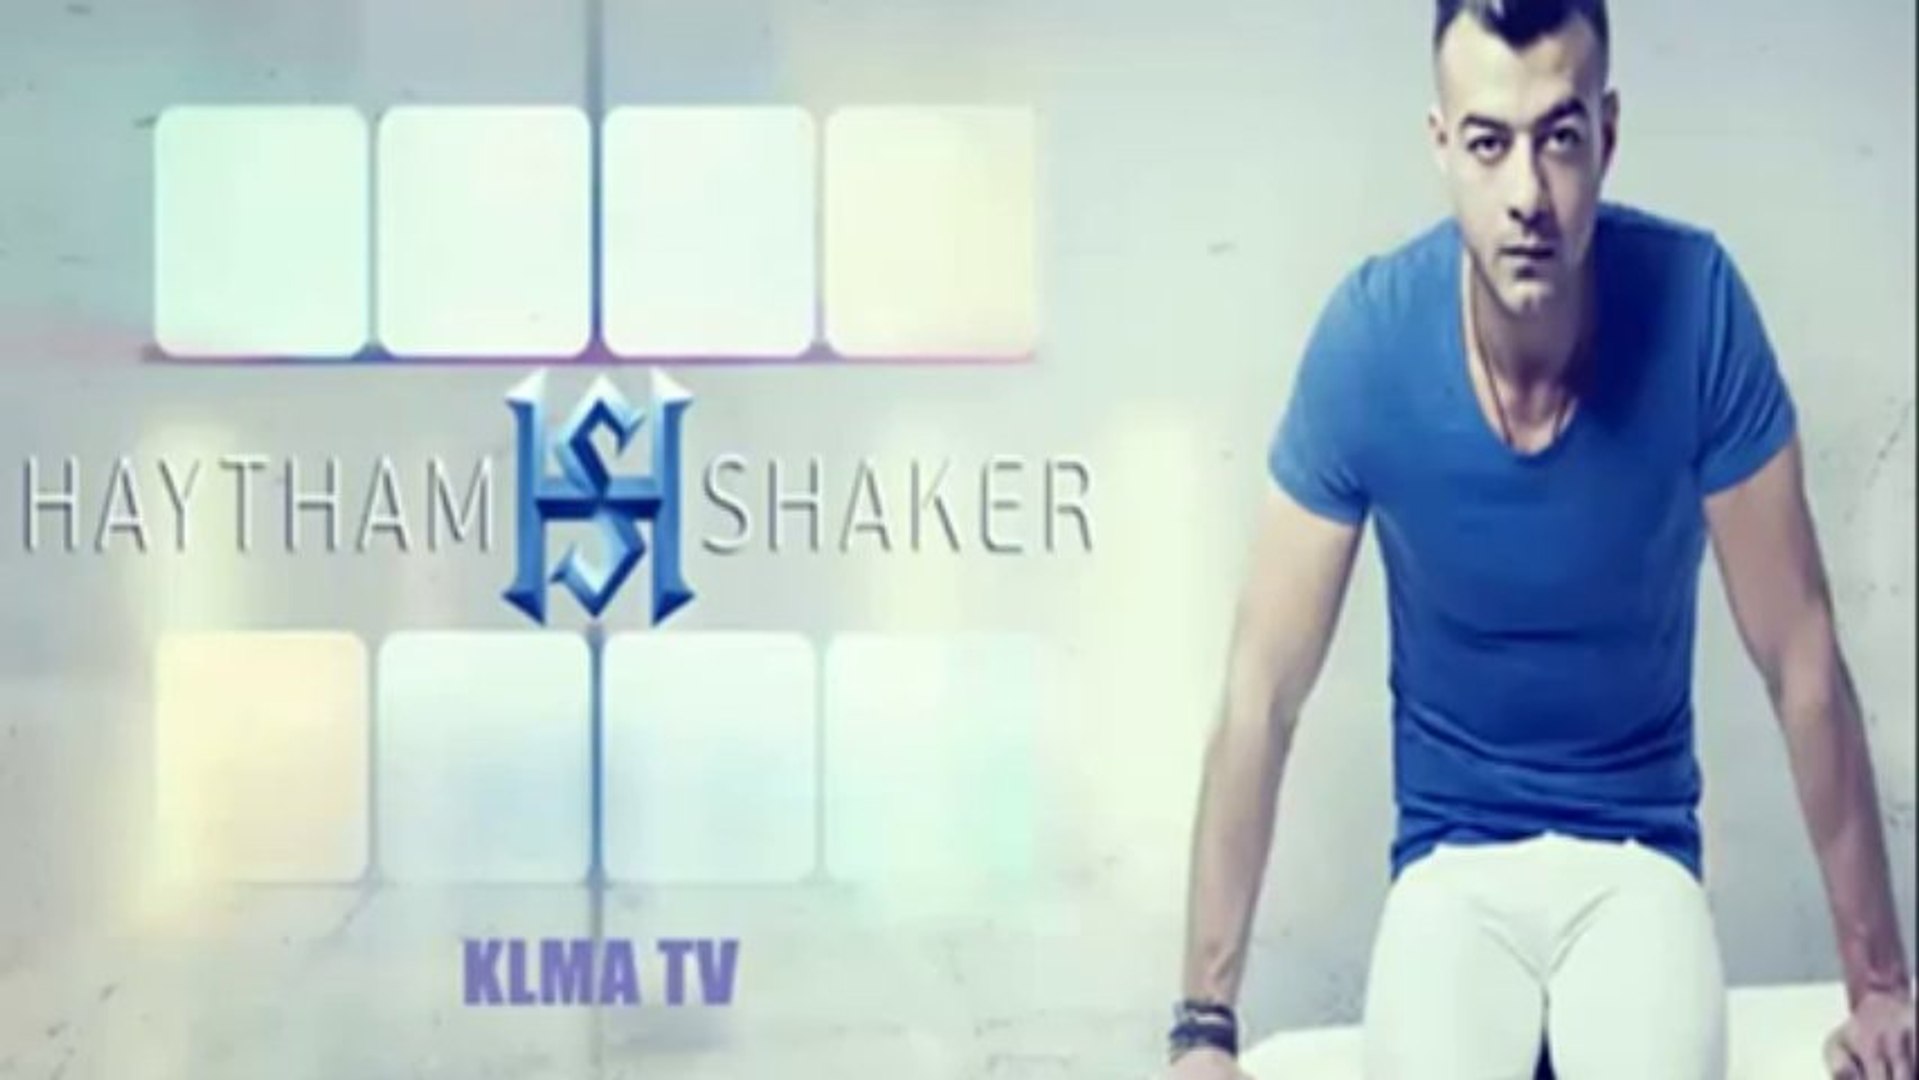 أغنية هيثم شاكر الجديدة أحلي قرار من الألبوم القادم 2014 - فيديو Dailymotion